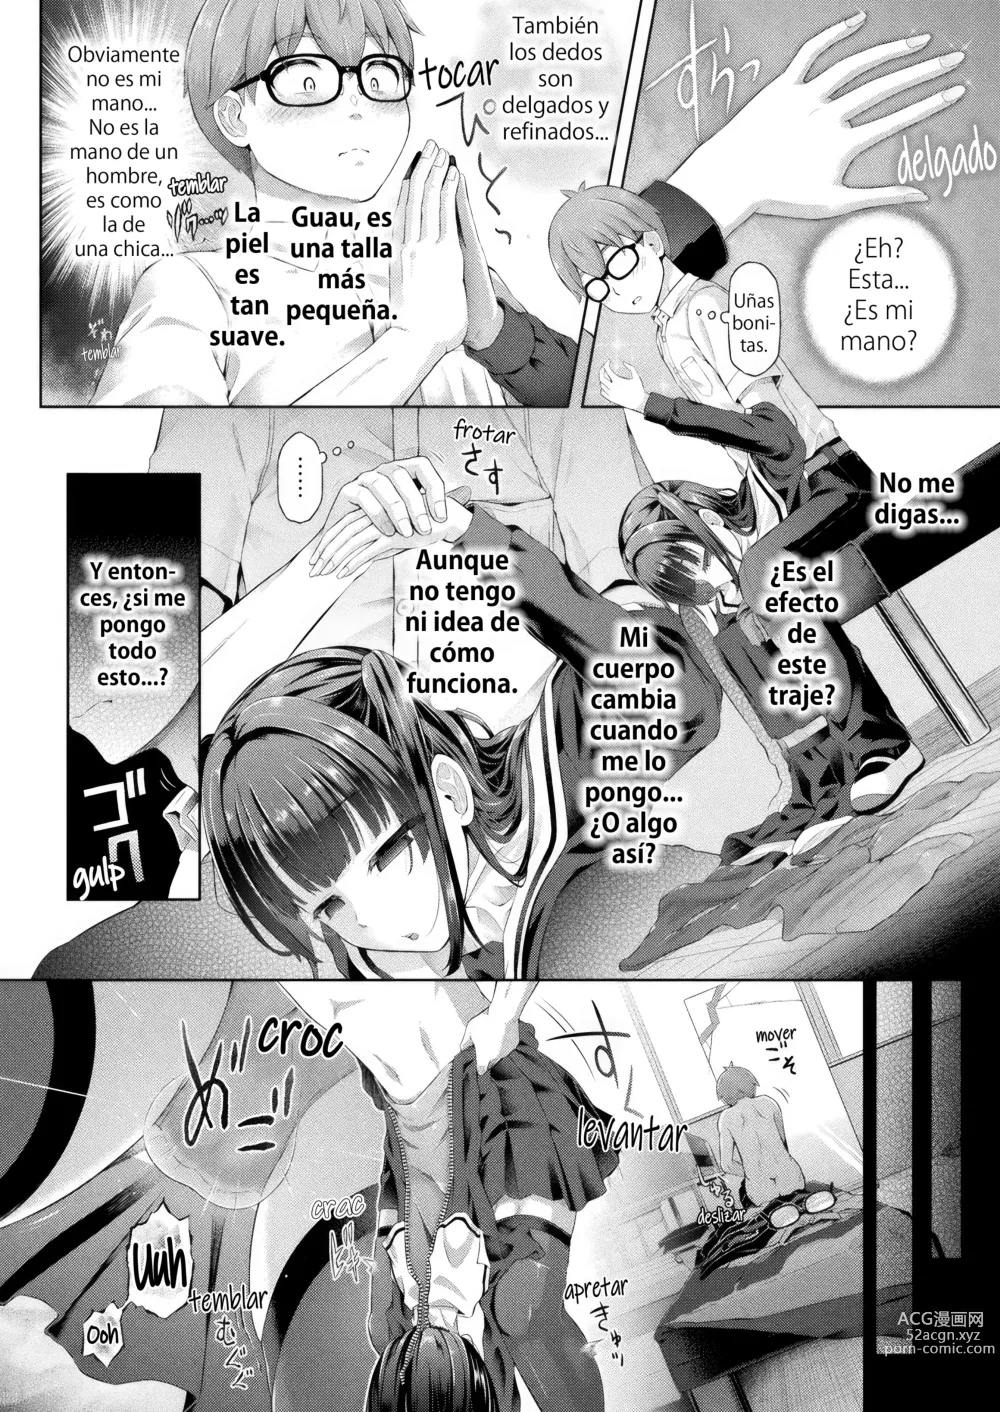 Page 6 of manga Doppelganger después de clases cap. 1